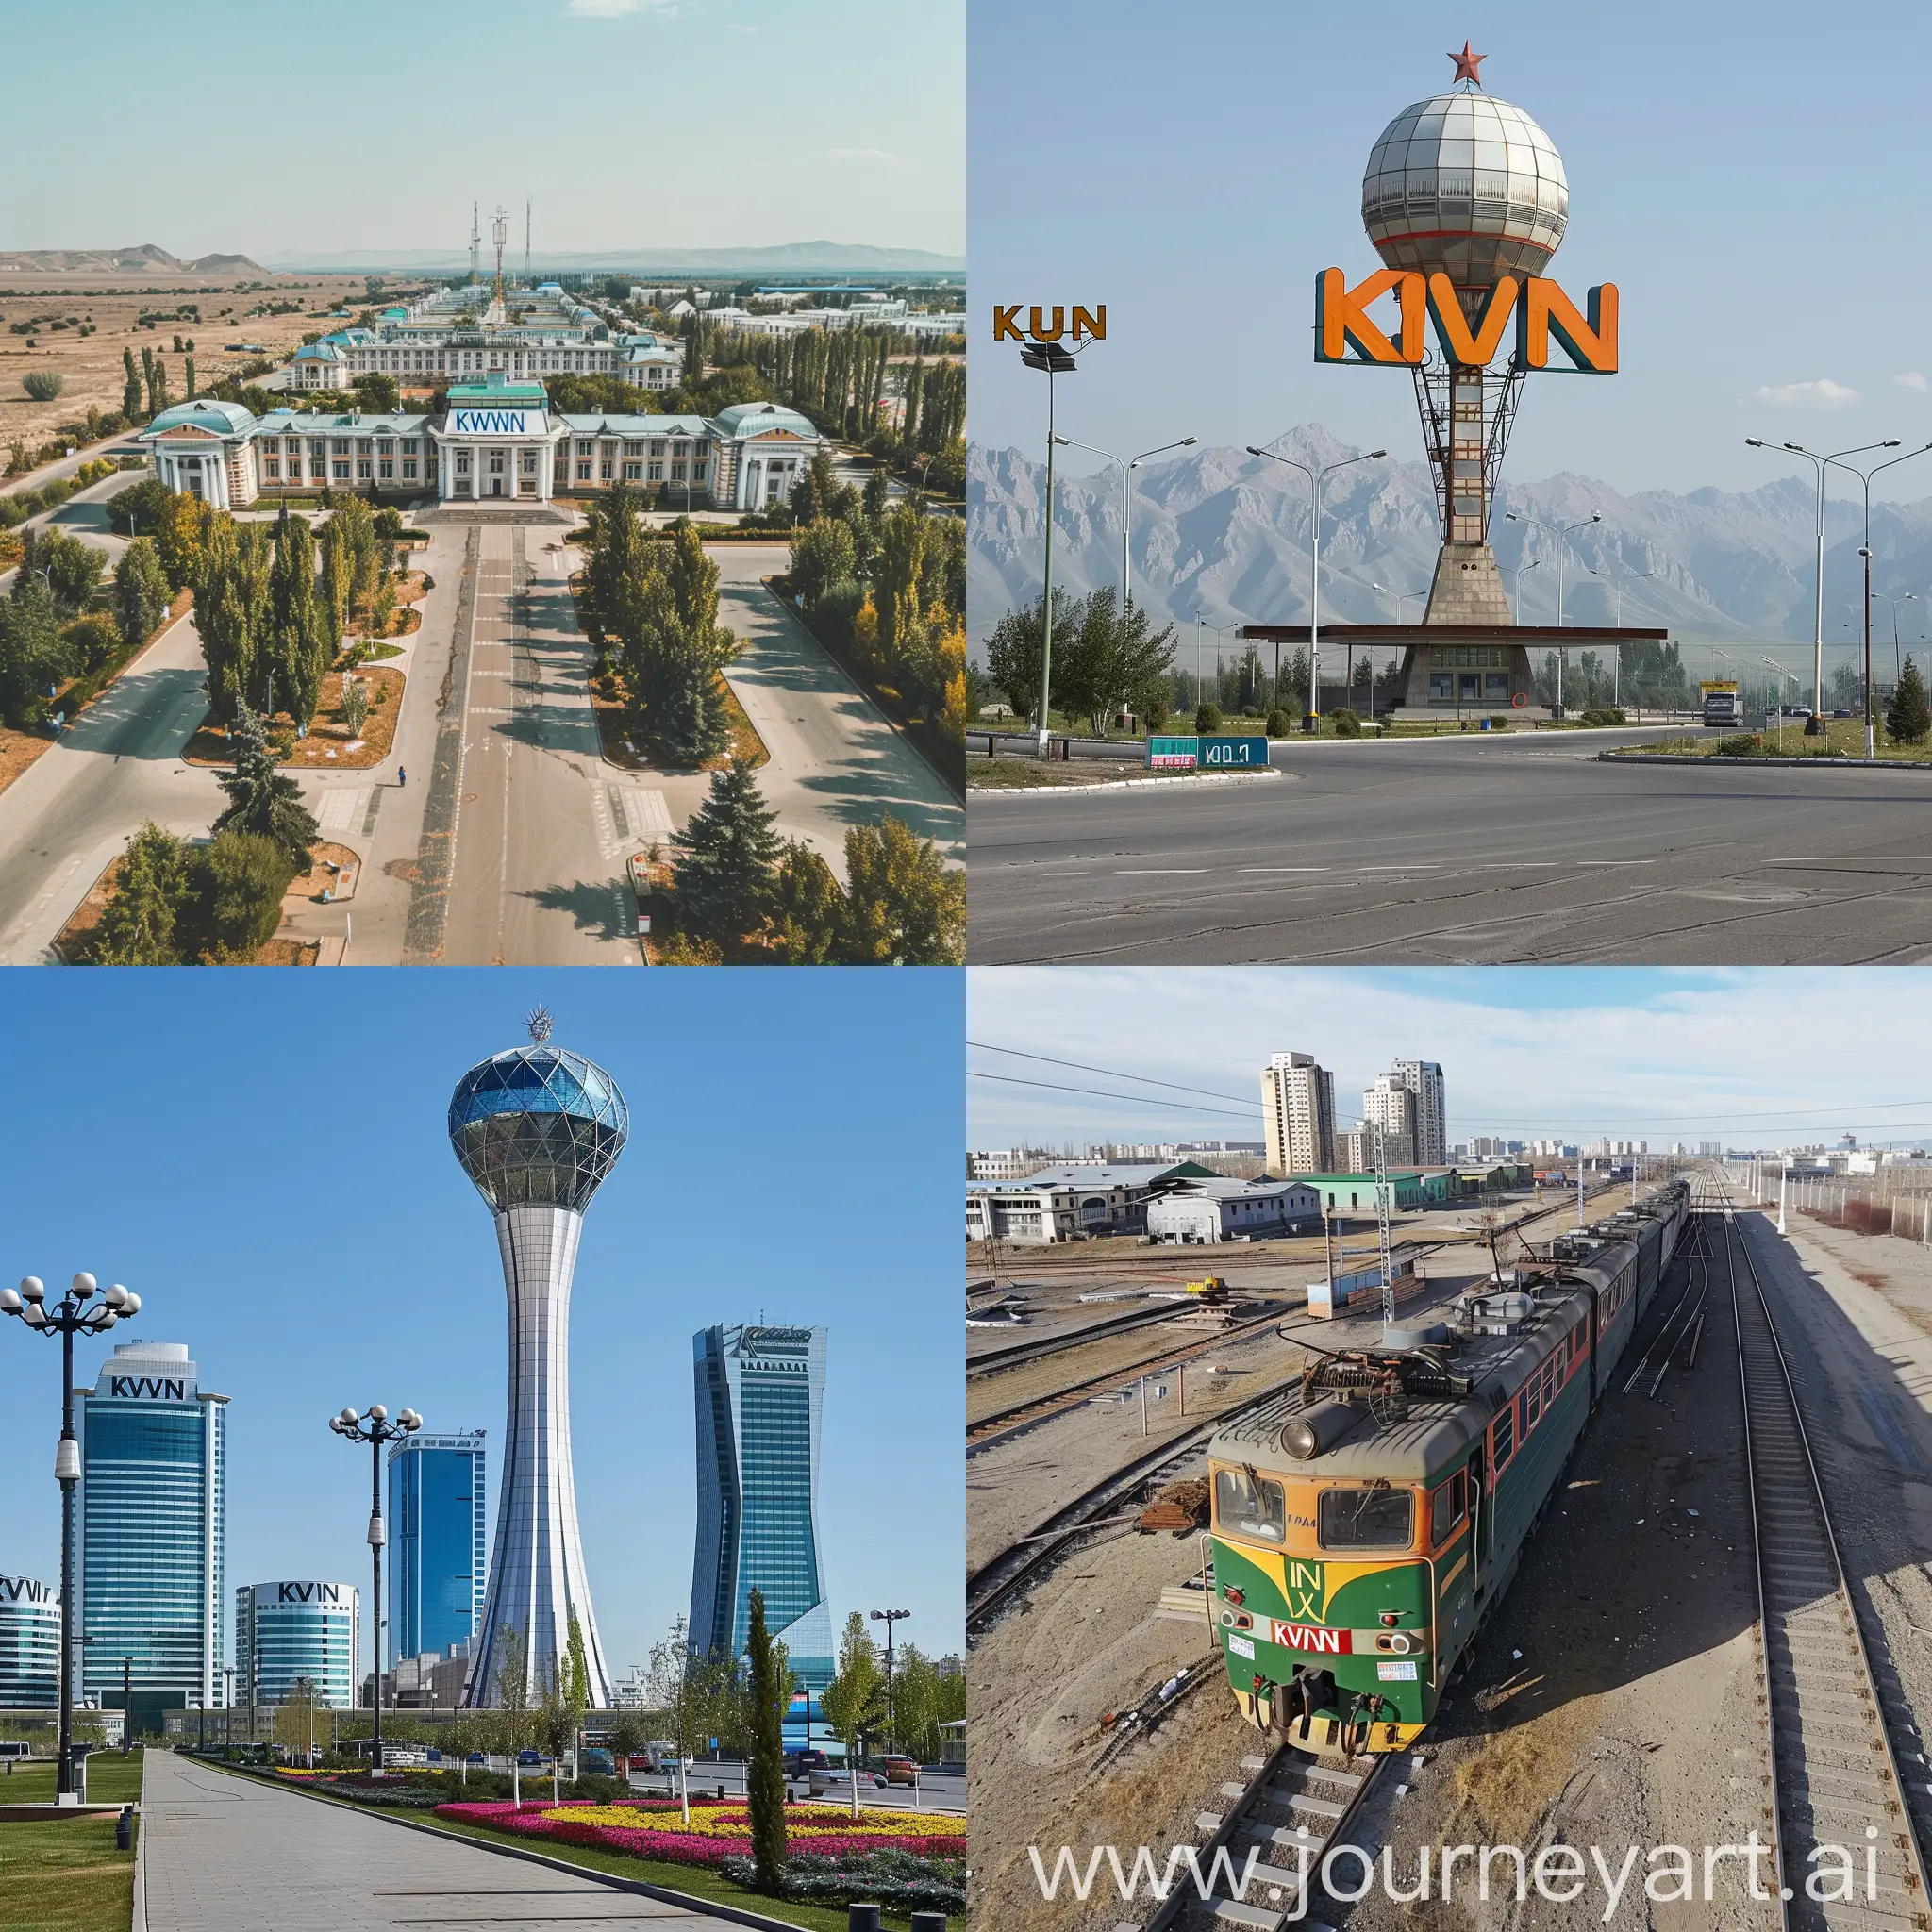 KVN-in-Kazakhstan-Vibrant-Cultural-Celebration-in-Square-Aspect-Ratio